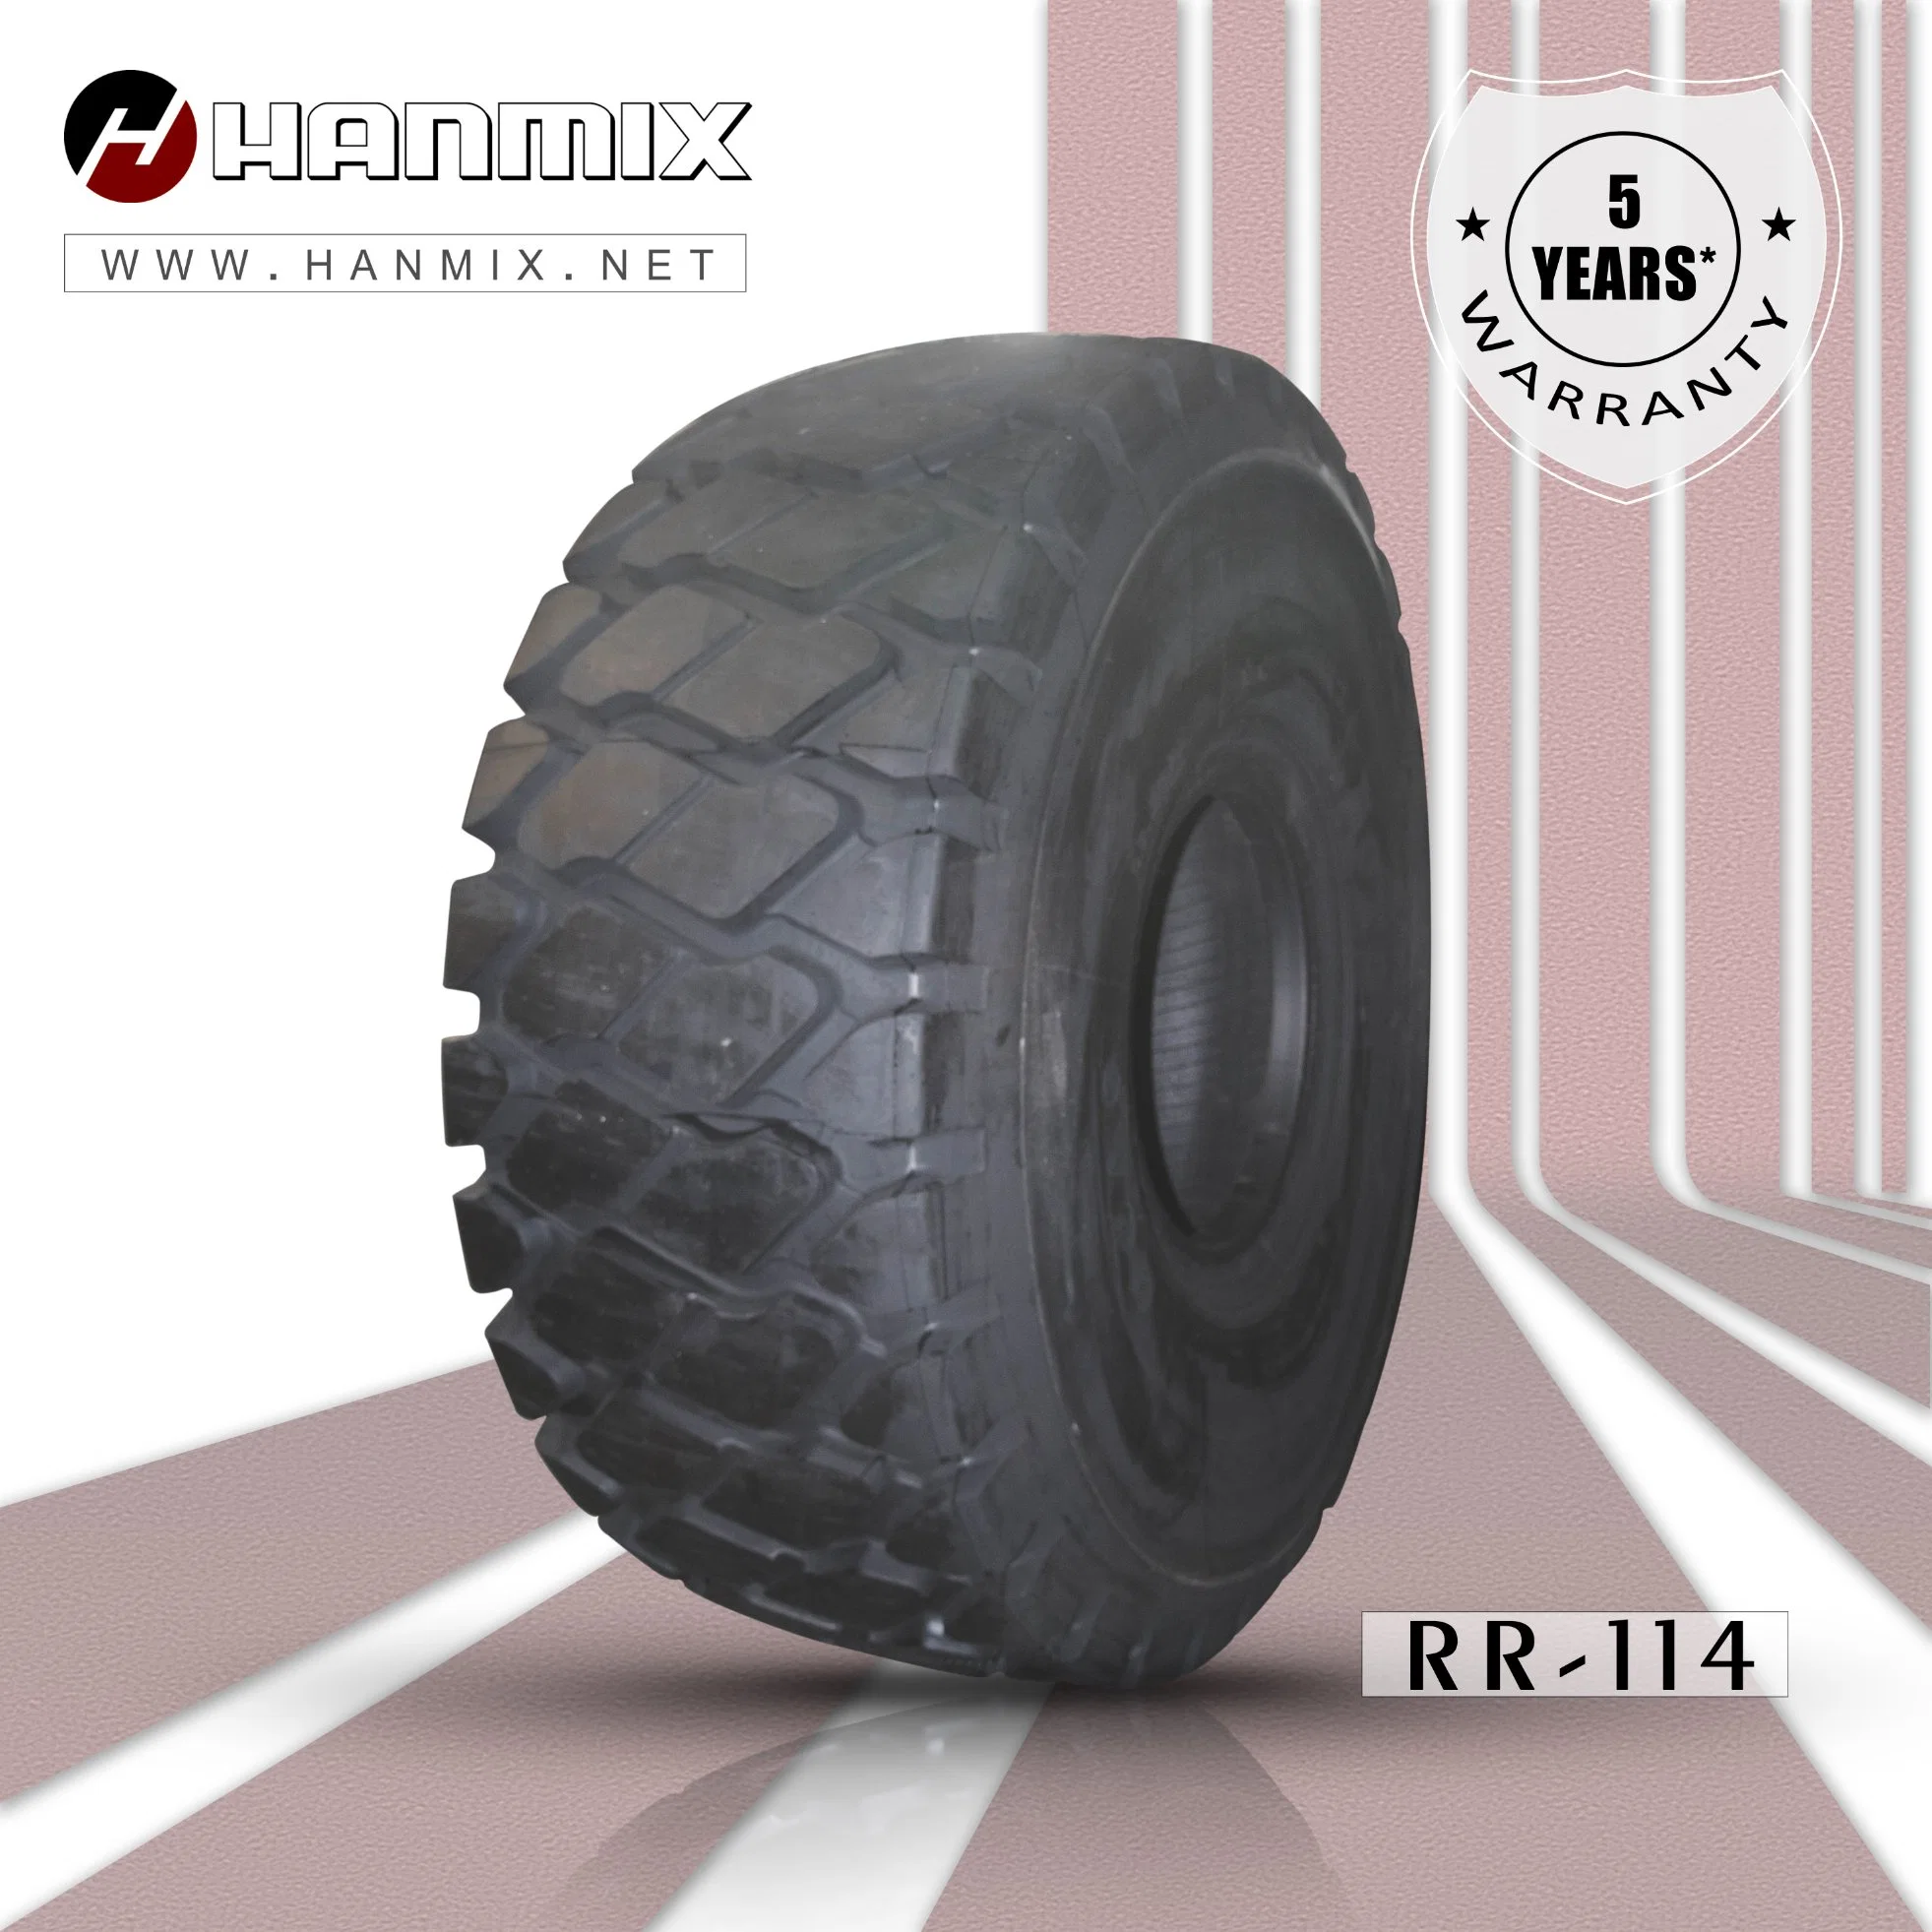 Hanmix neumáticos OTR Dumper articulado neumático The-Road off-E3/L3 de la retroexcavadora Dumper rígido de los neumáticos radiales 26,5r25 29.5R25 18.00R25 (505/95R25) 16.00R25 (445/95R25).